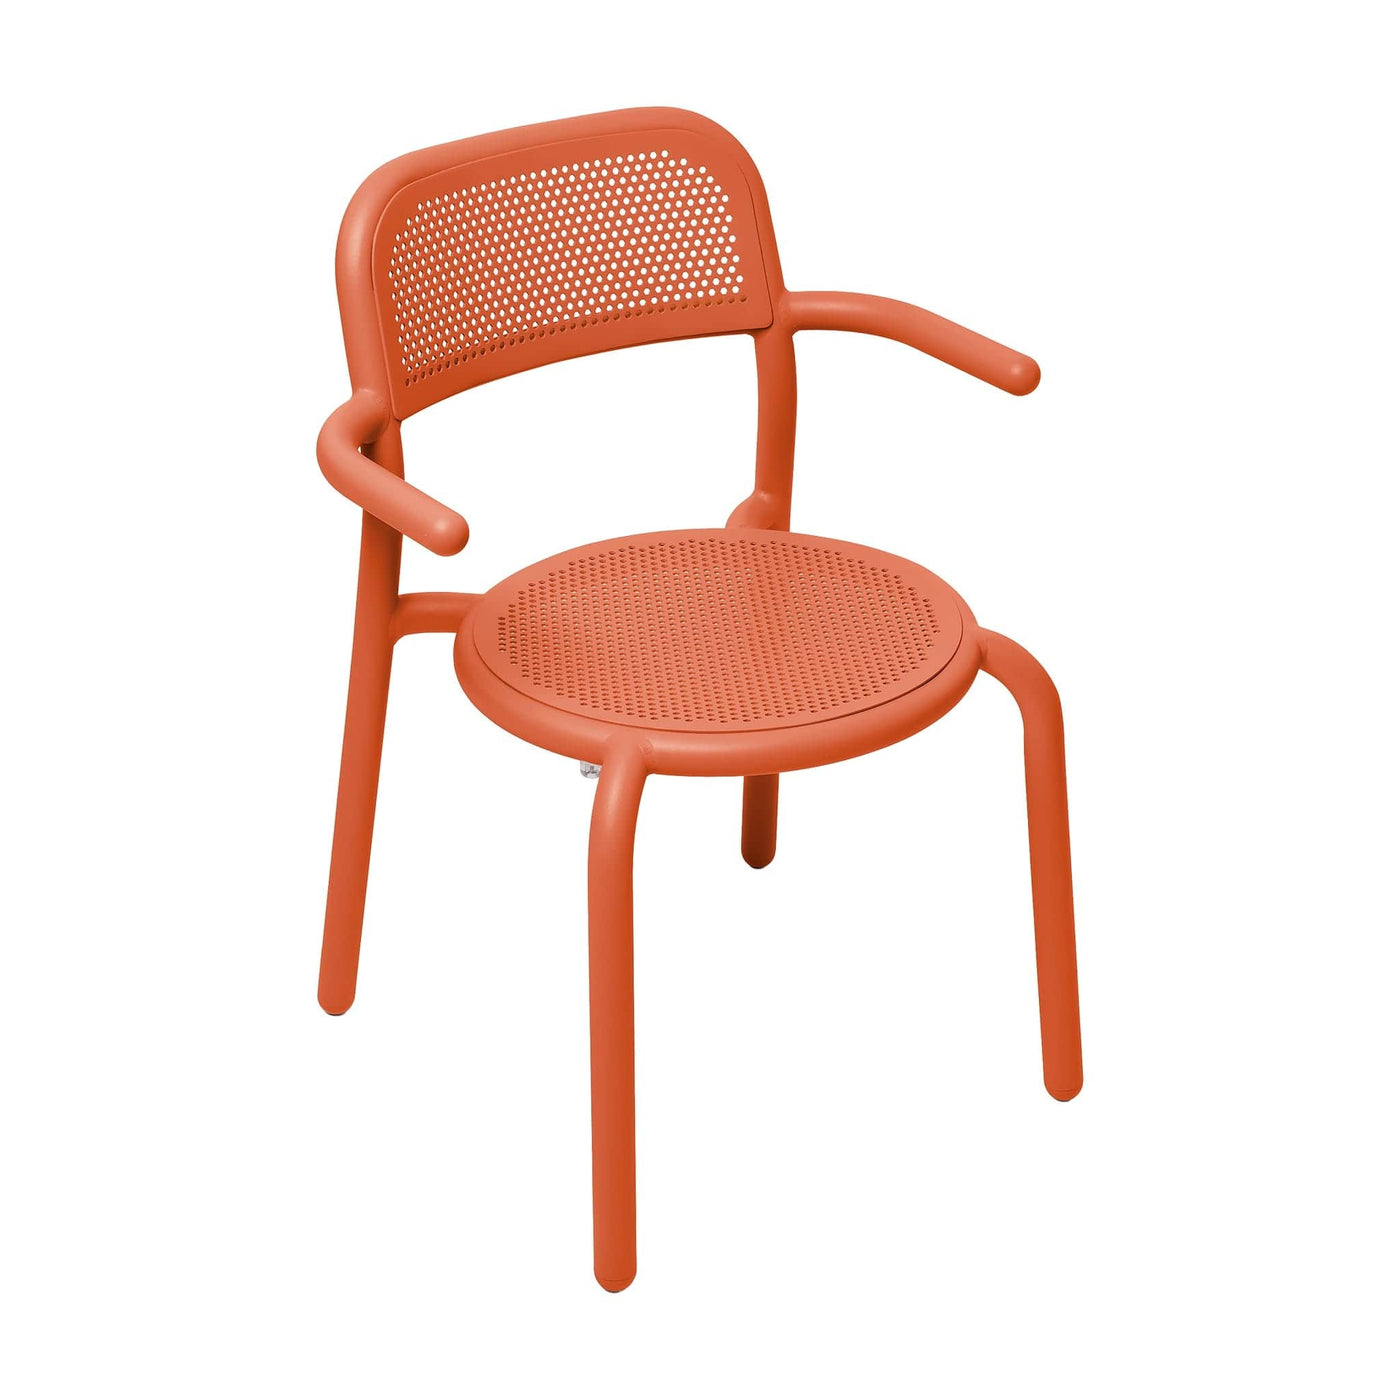 Chaise avec bras Toní de Fatboy : design hexagonal distinctif et résistance aux conditions météorologiques. Tangerine.